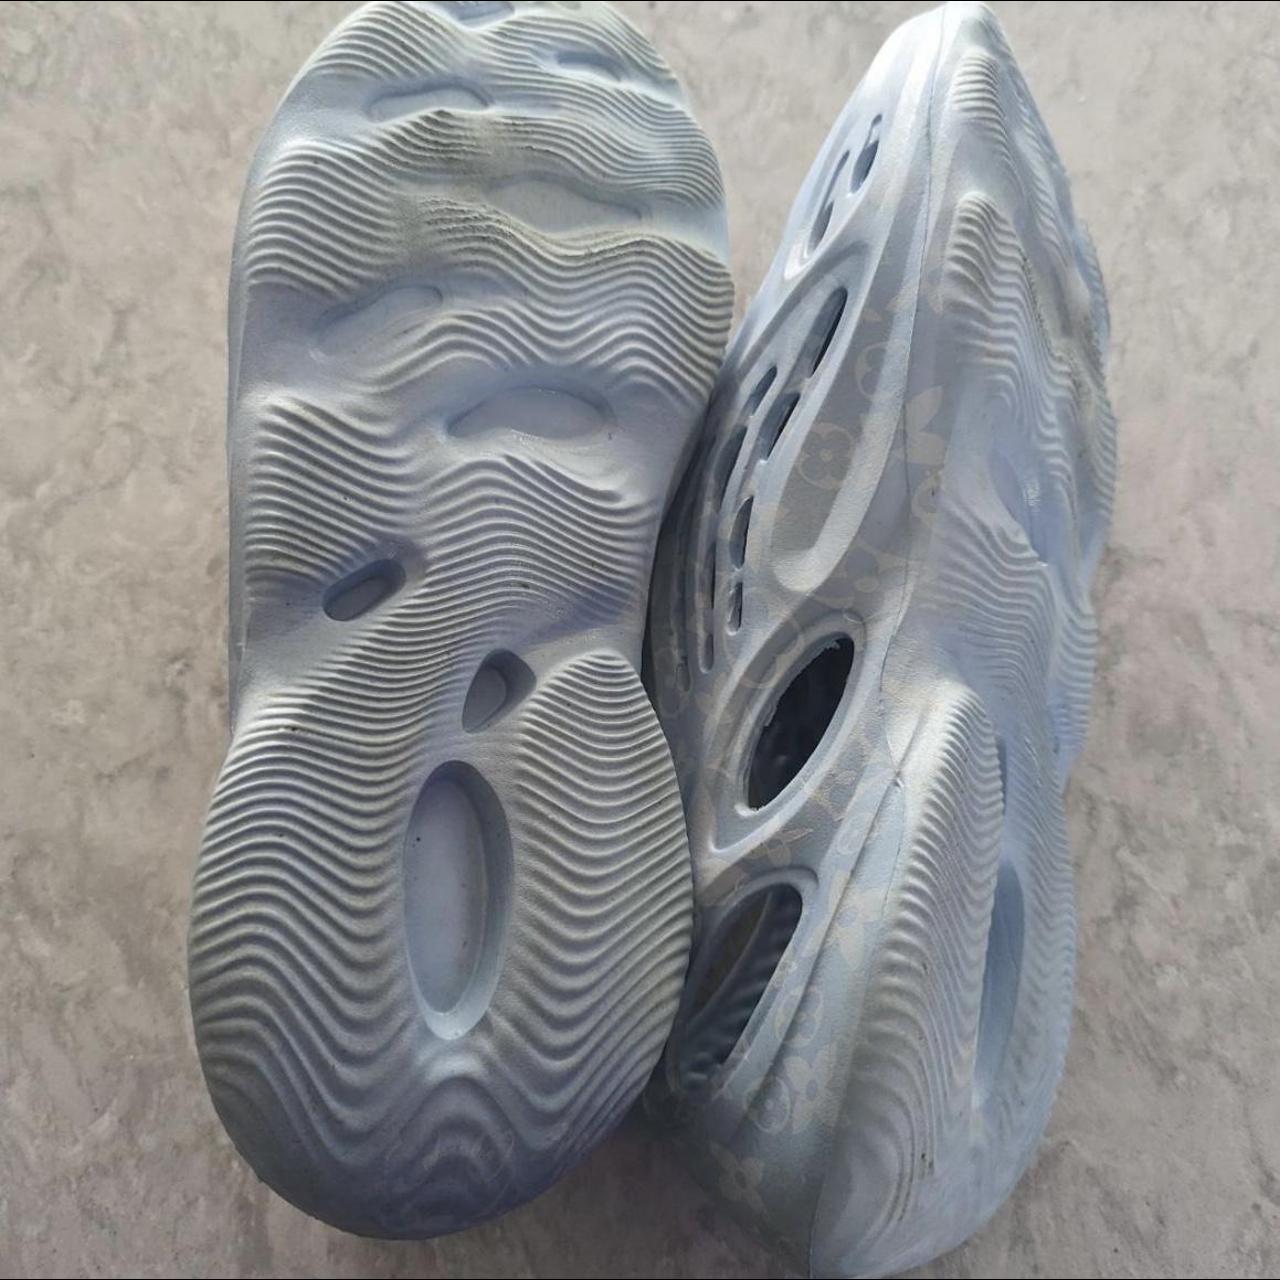 Imran Potato Men's Sneakers - Blue - One Size